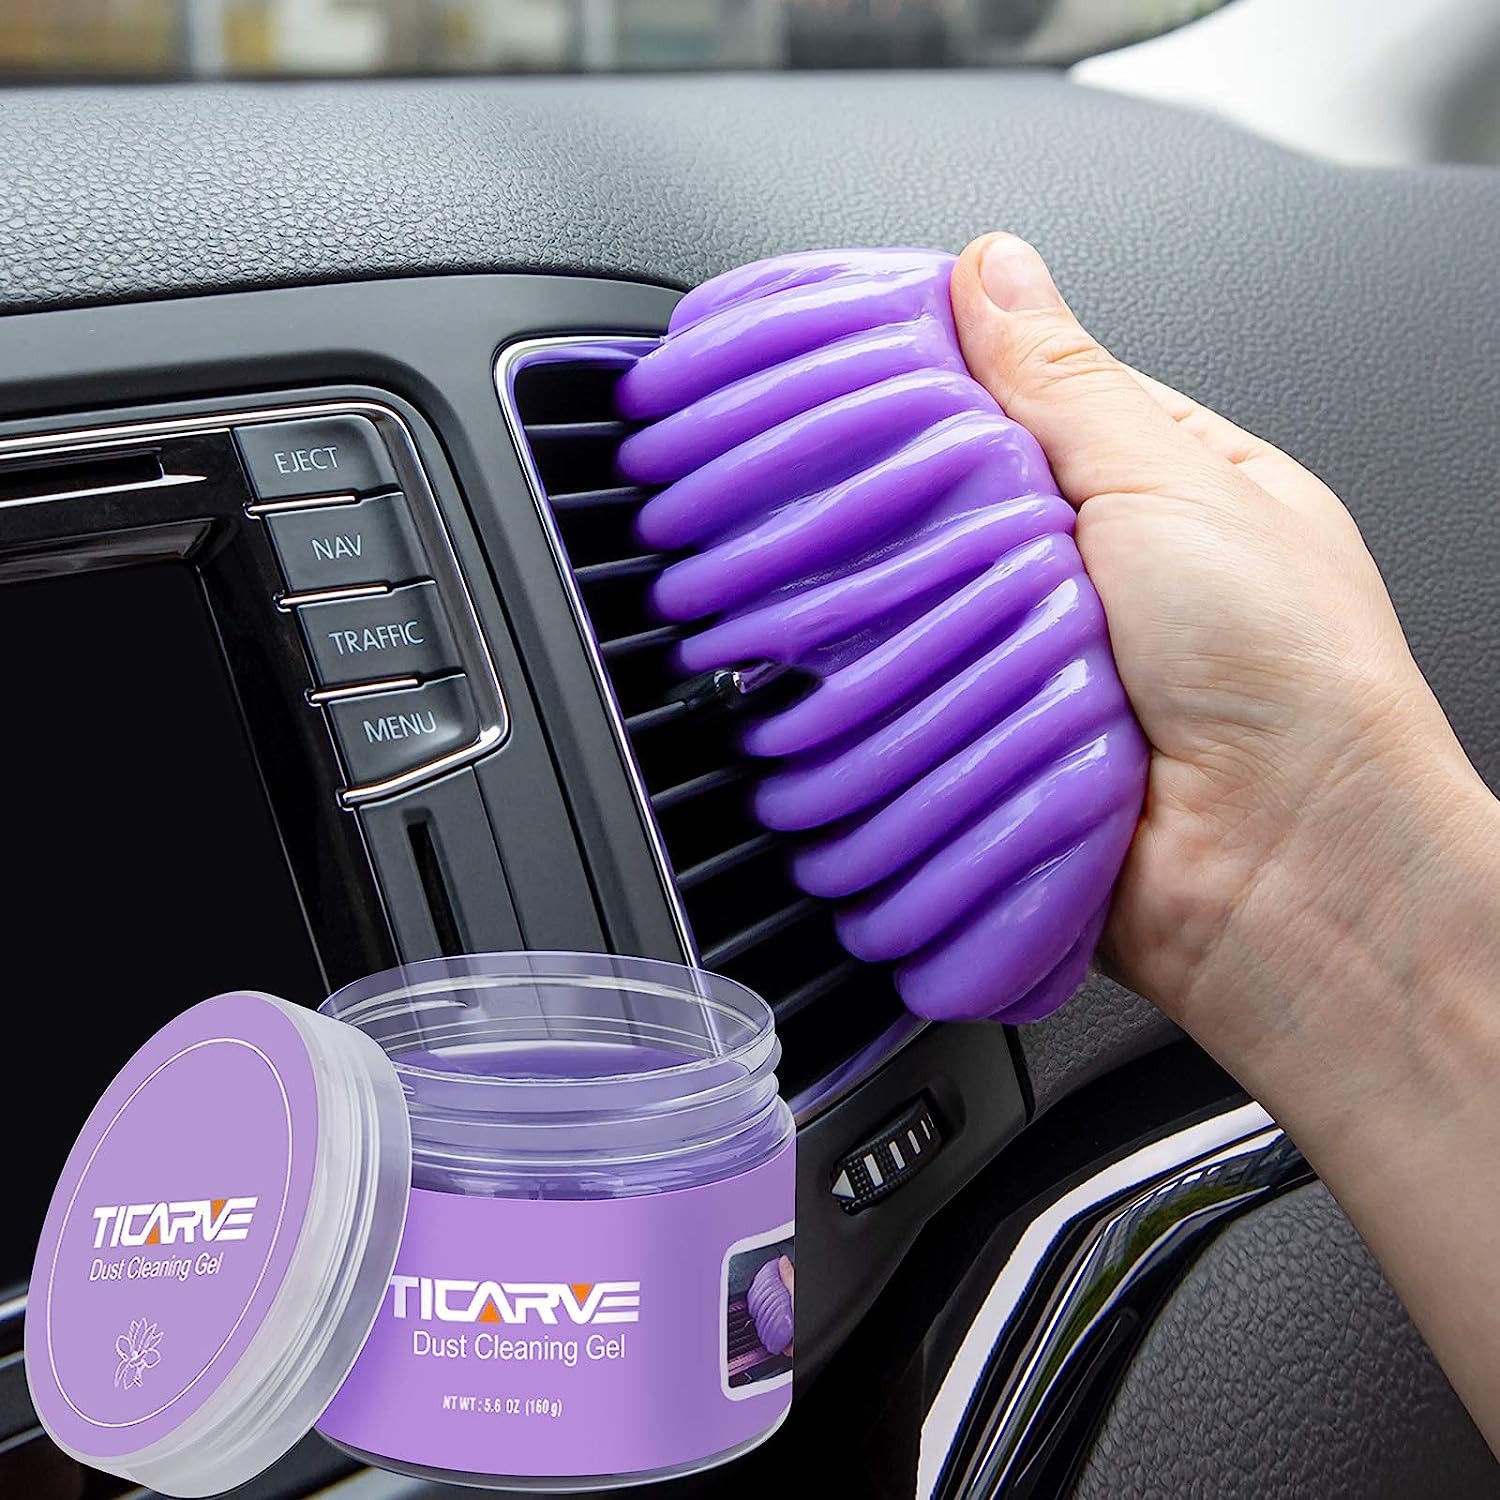 【エクスプレス便】TICARVE Cleaning Gel for Car Purple 6.7 ozティカーブ クリーニングジェル 自動車クリーナーパープル